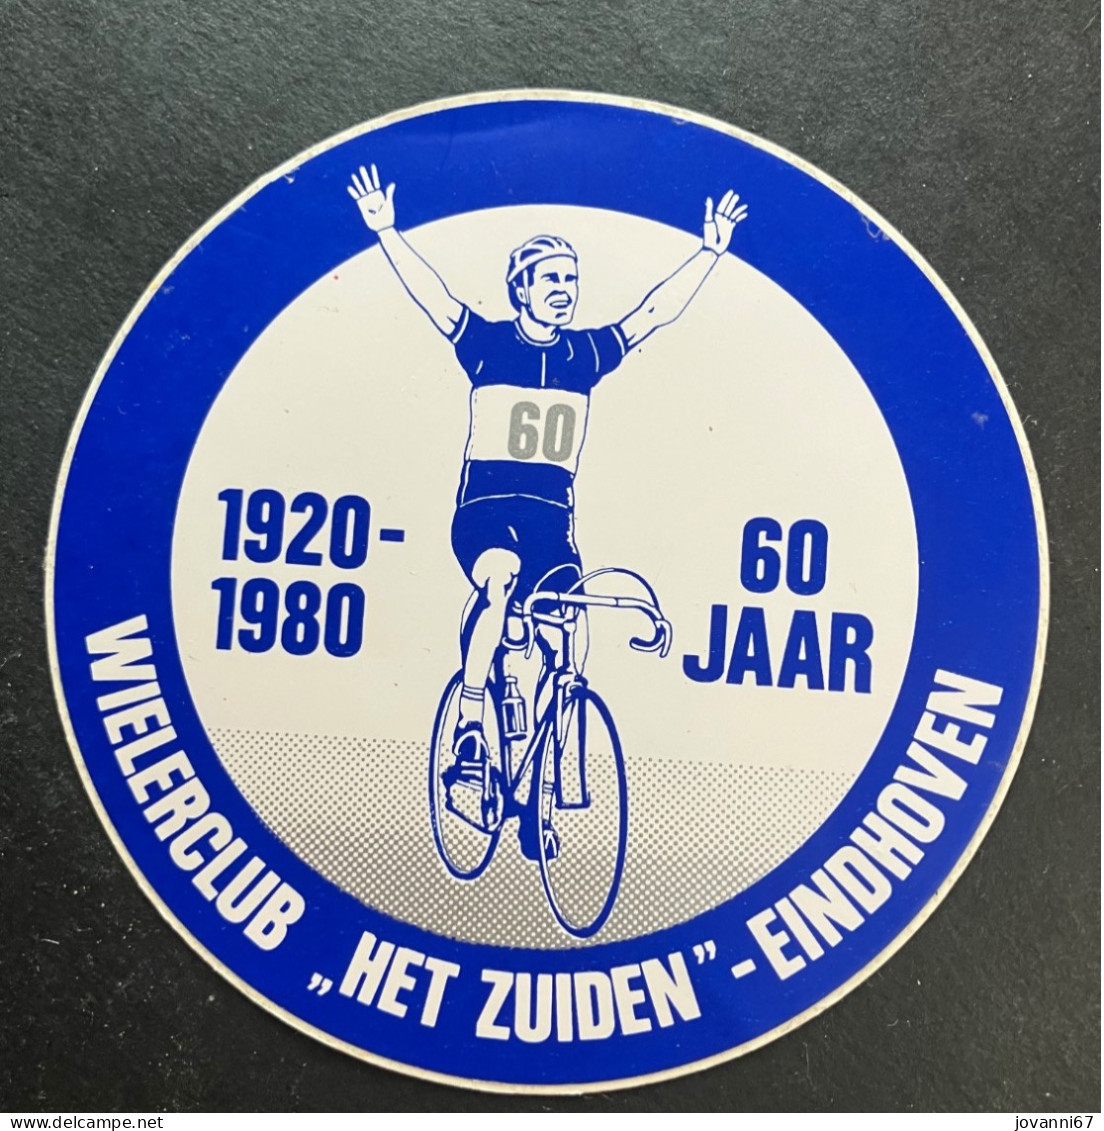 Het Zuiden Eindhoven  - Sticker - Cyclisme - Ciclismo -wielrennen - Radsport